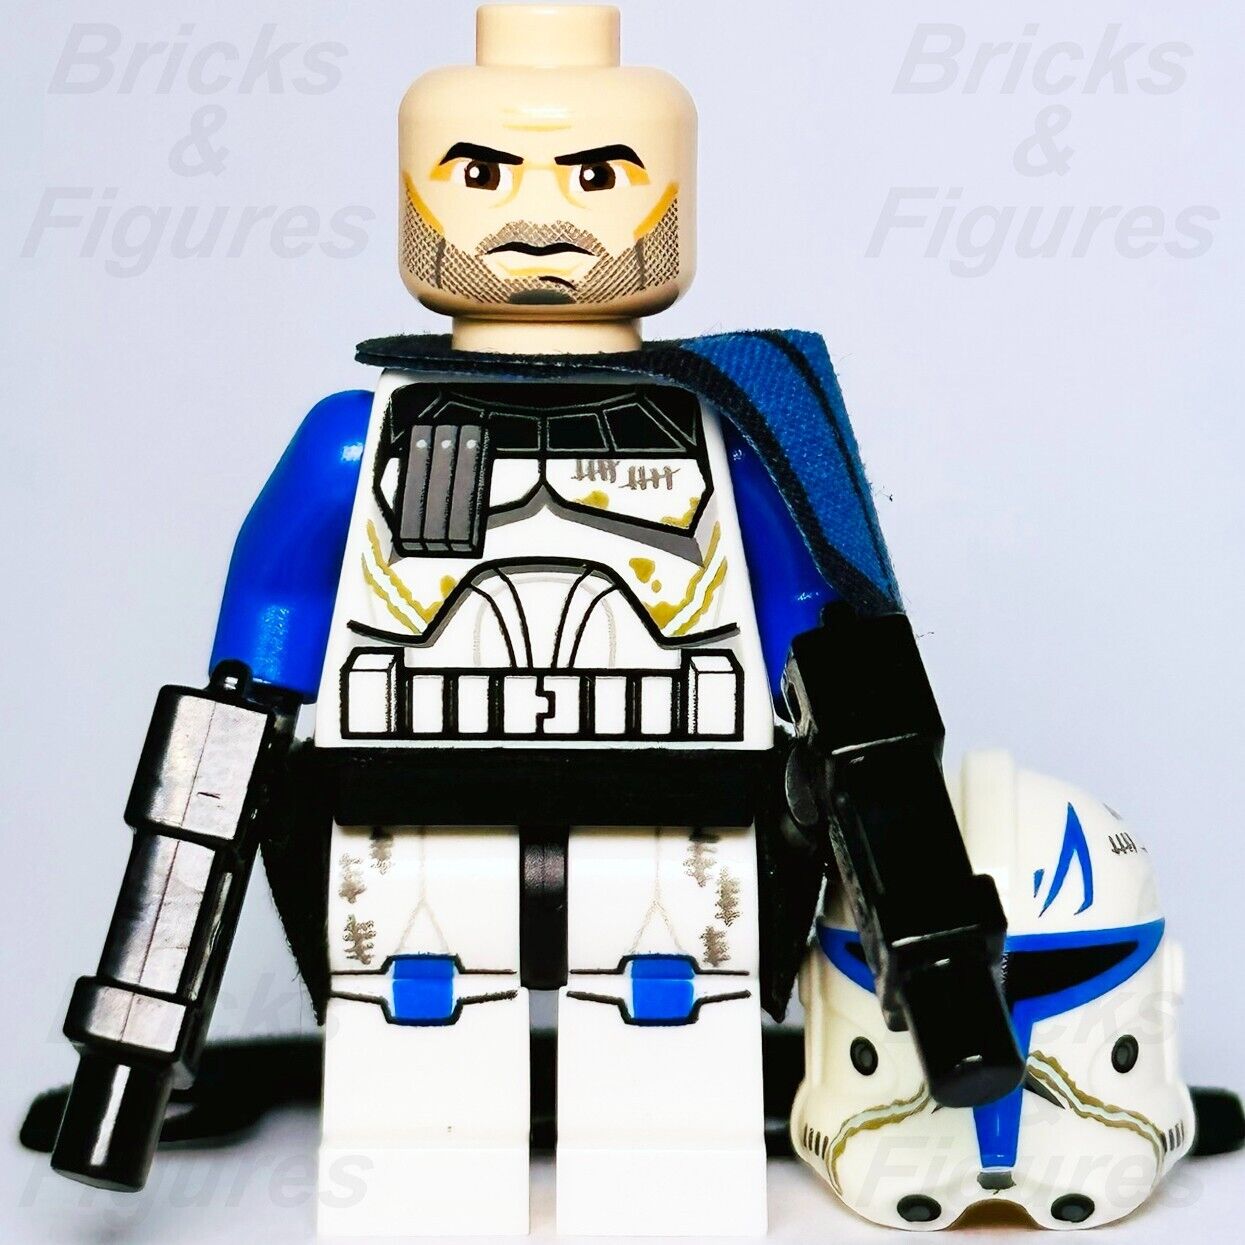 LEGO Captain Rex Minifigure LEGO (R) Minifigures for sale